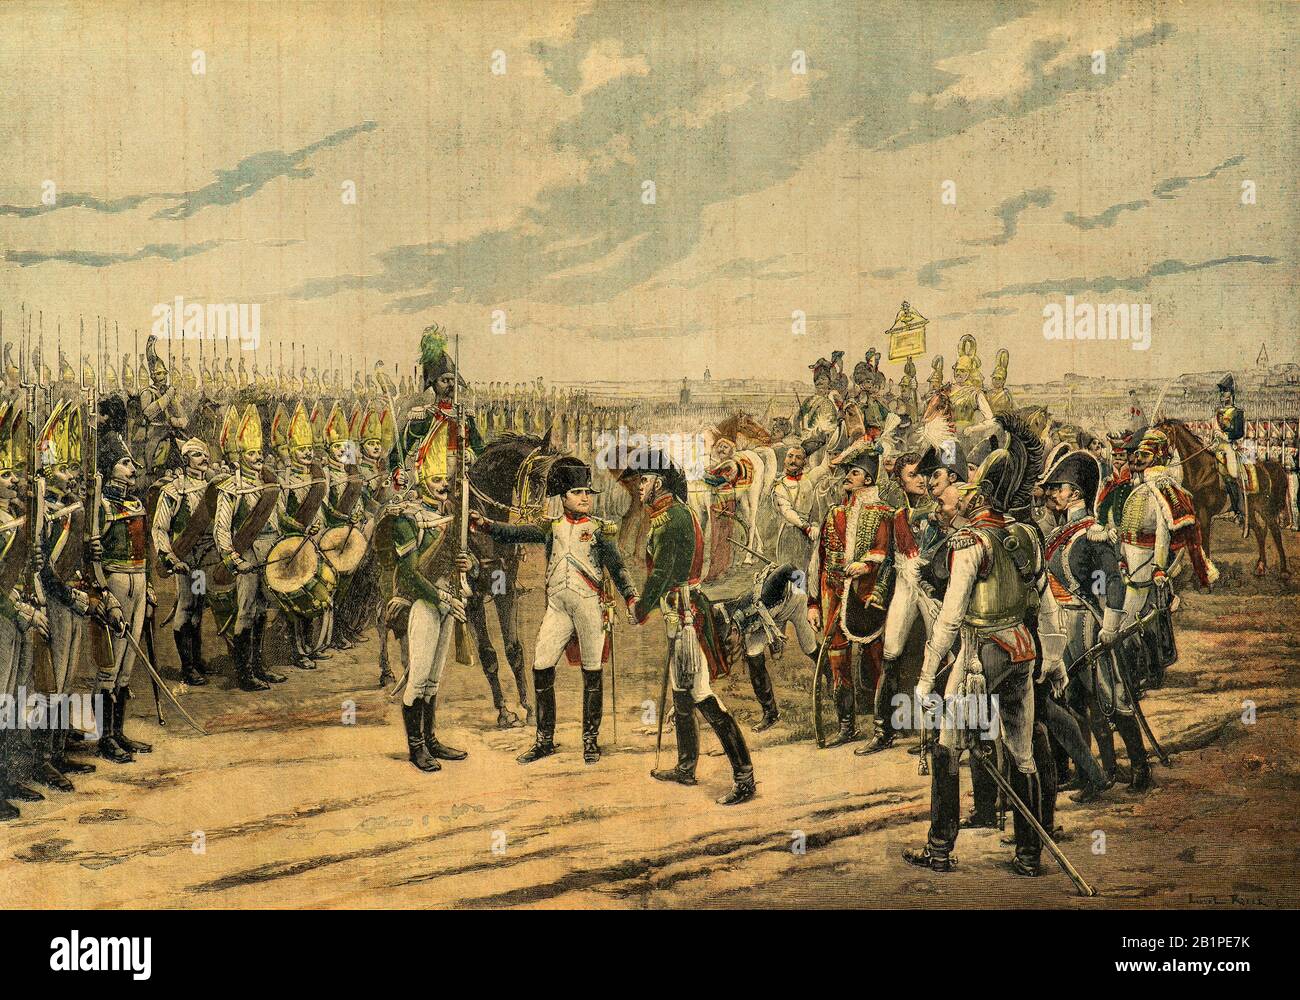 Incisione - l'imperatore Napoleone 1st decora il granatiere russo Lazareff (lazarew) con la croce della legione d'onore a Tilsitt nel 1807 - Collezione privata Foto Stock